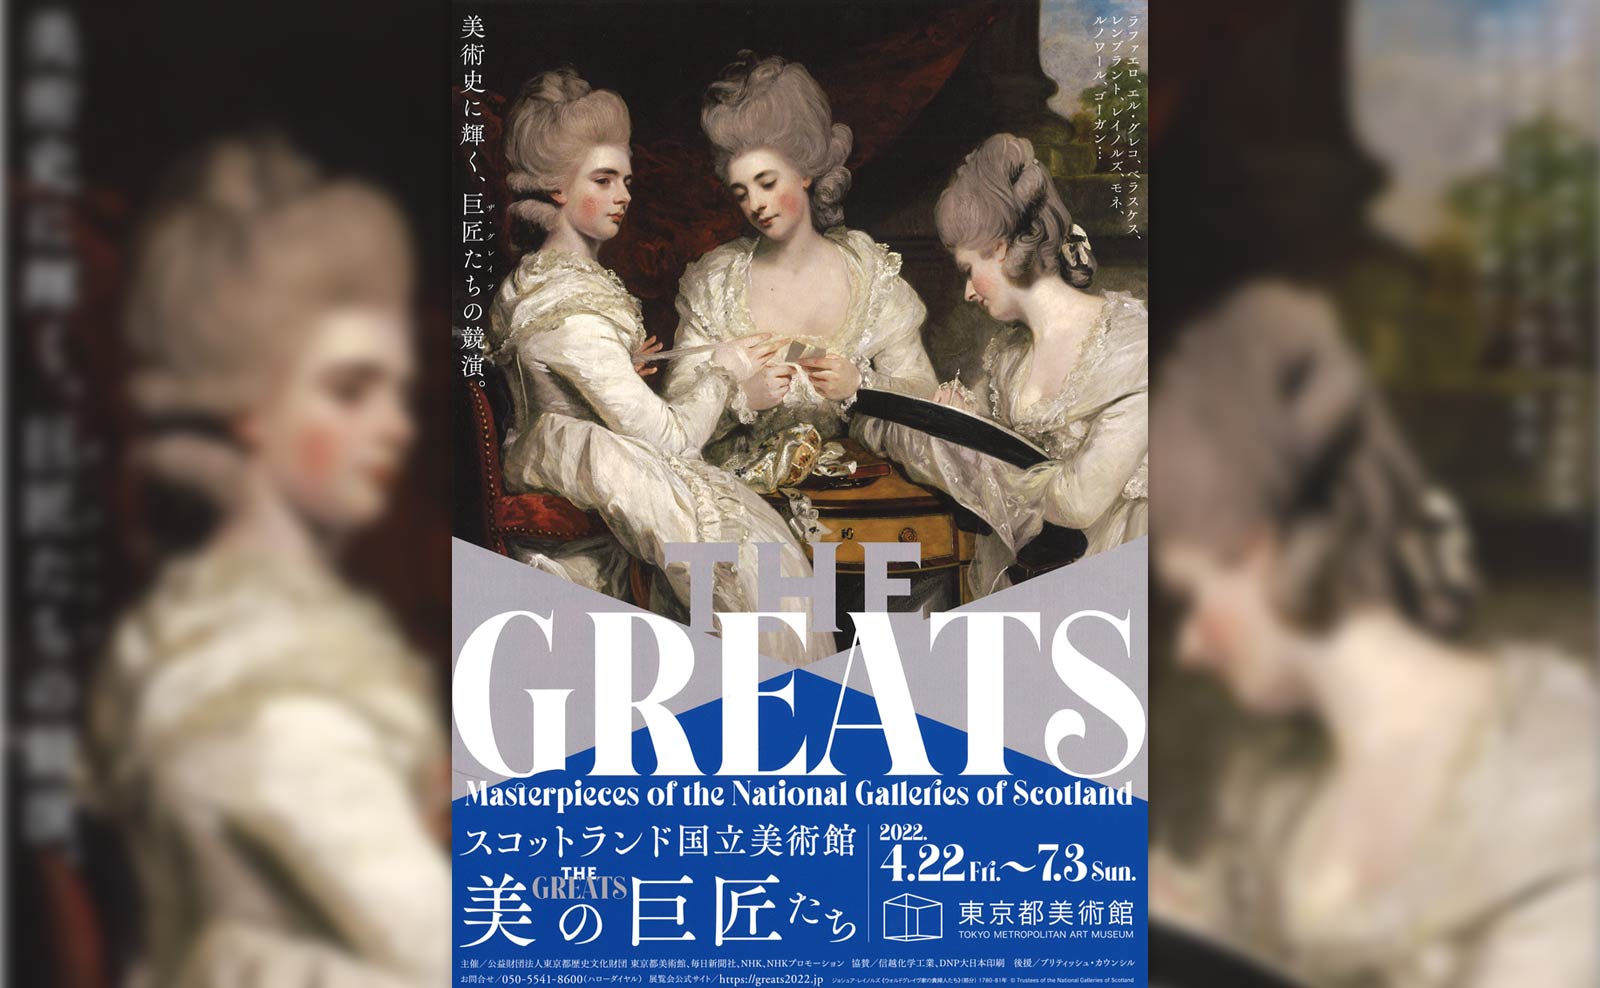 スコットランド国立美術館 THE GREATS 美の巨匠たち」が東京都美術館で 